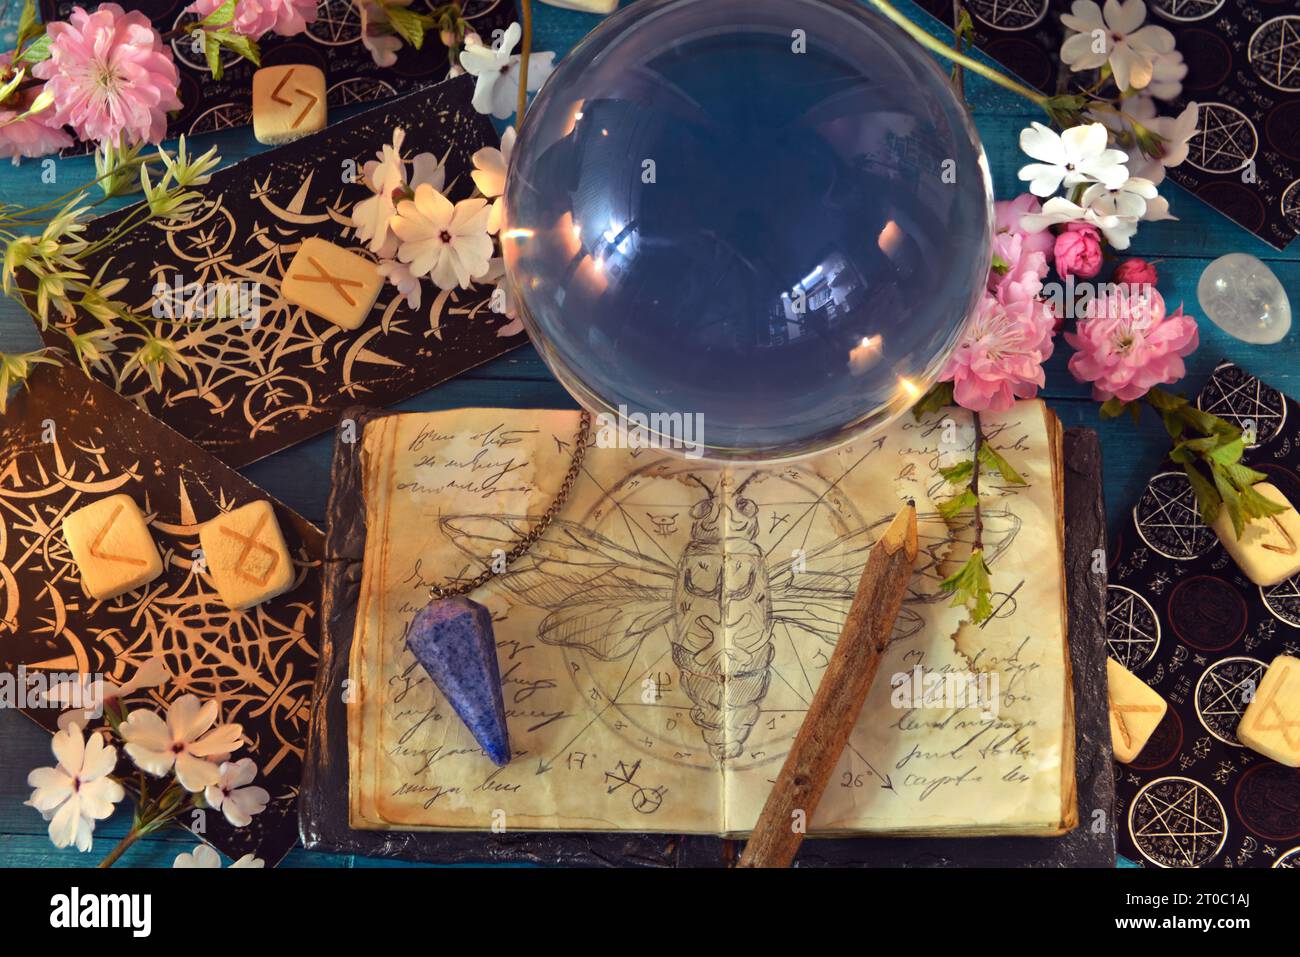 Cartes de tarot, boule magique et journal de sorcière sur la table rituelle. Nature morte occulte, ésotérique et divinatoire. Fond mystique avec des objets vintage Banque D'Images